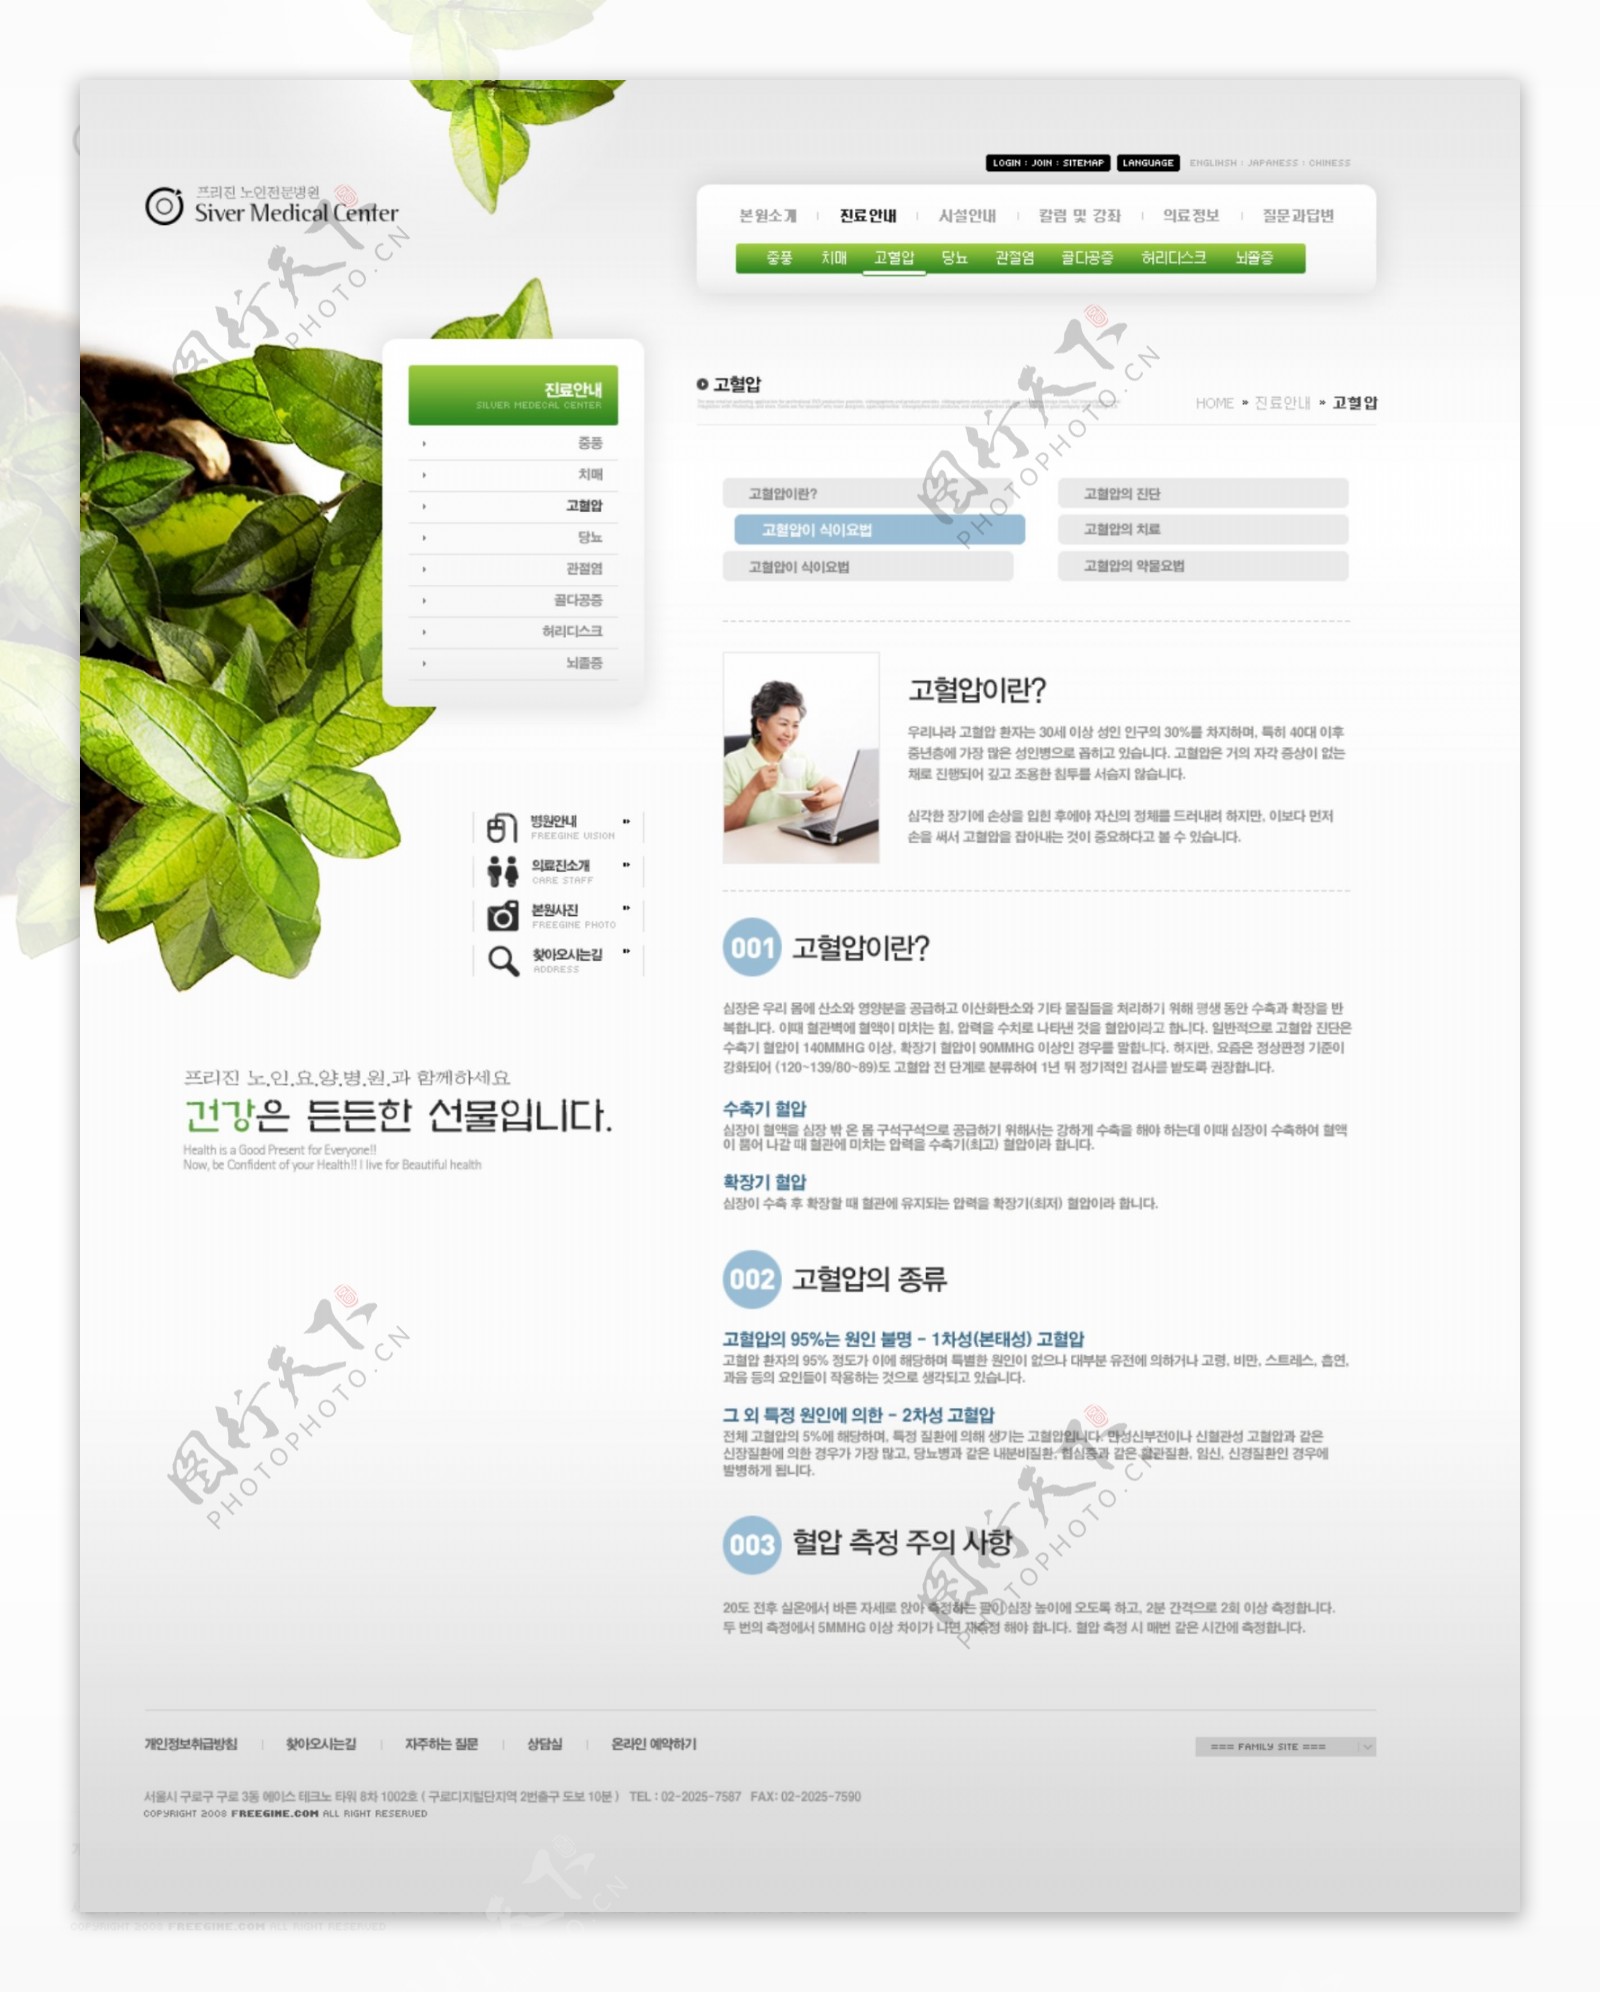 绿色清新网站psd网页模板